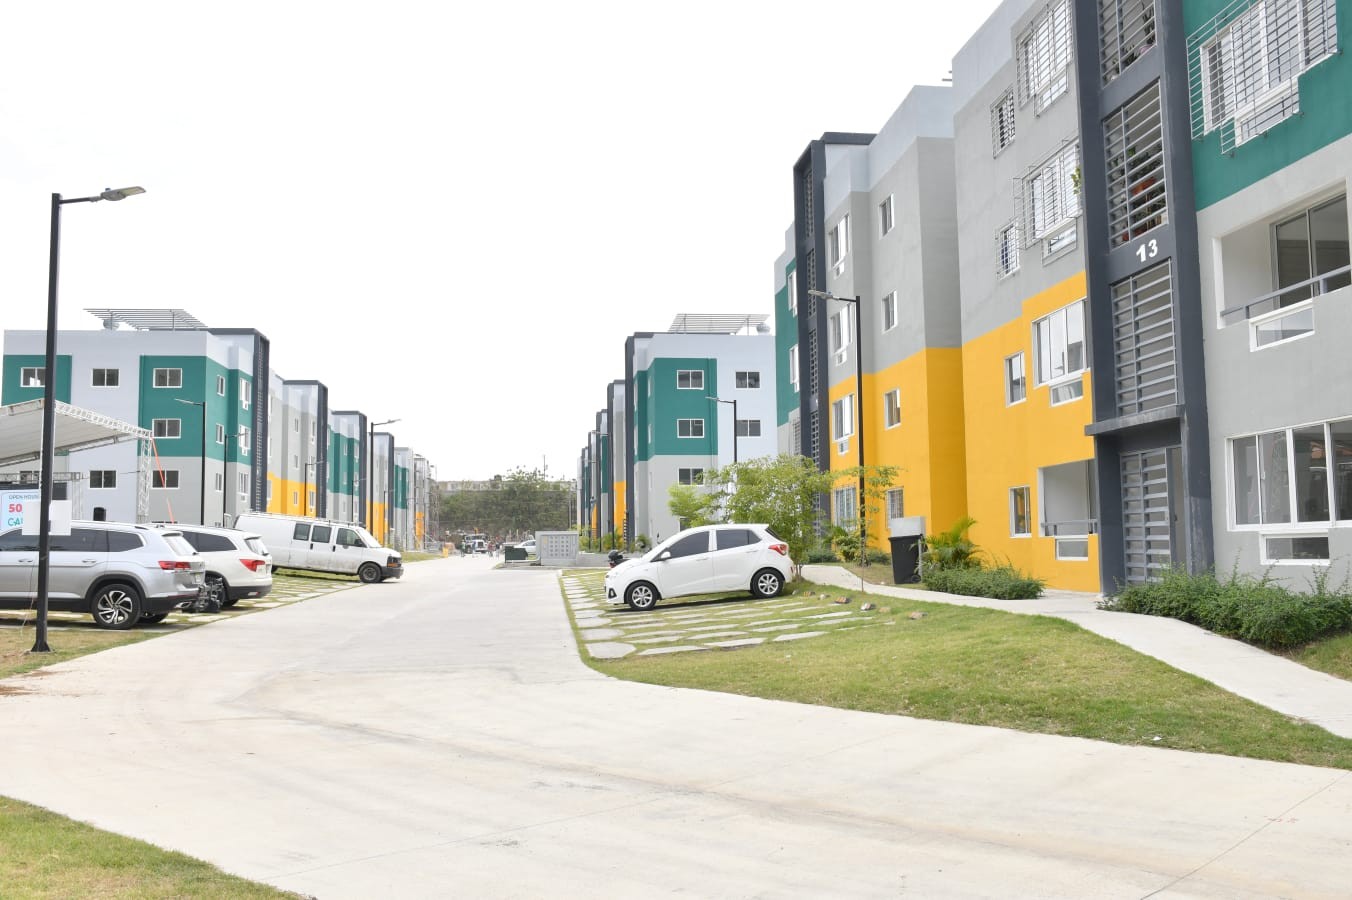 apartamentos - Se vende proyecto residencial en Santo Domingo Norte

US$75,000 2